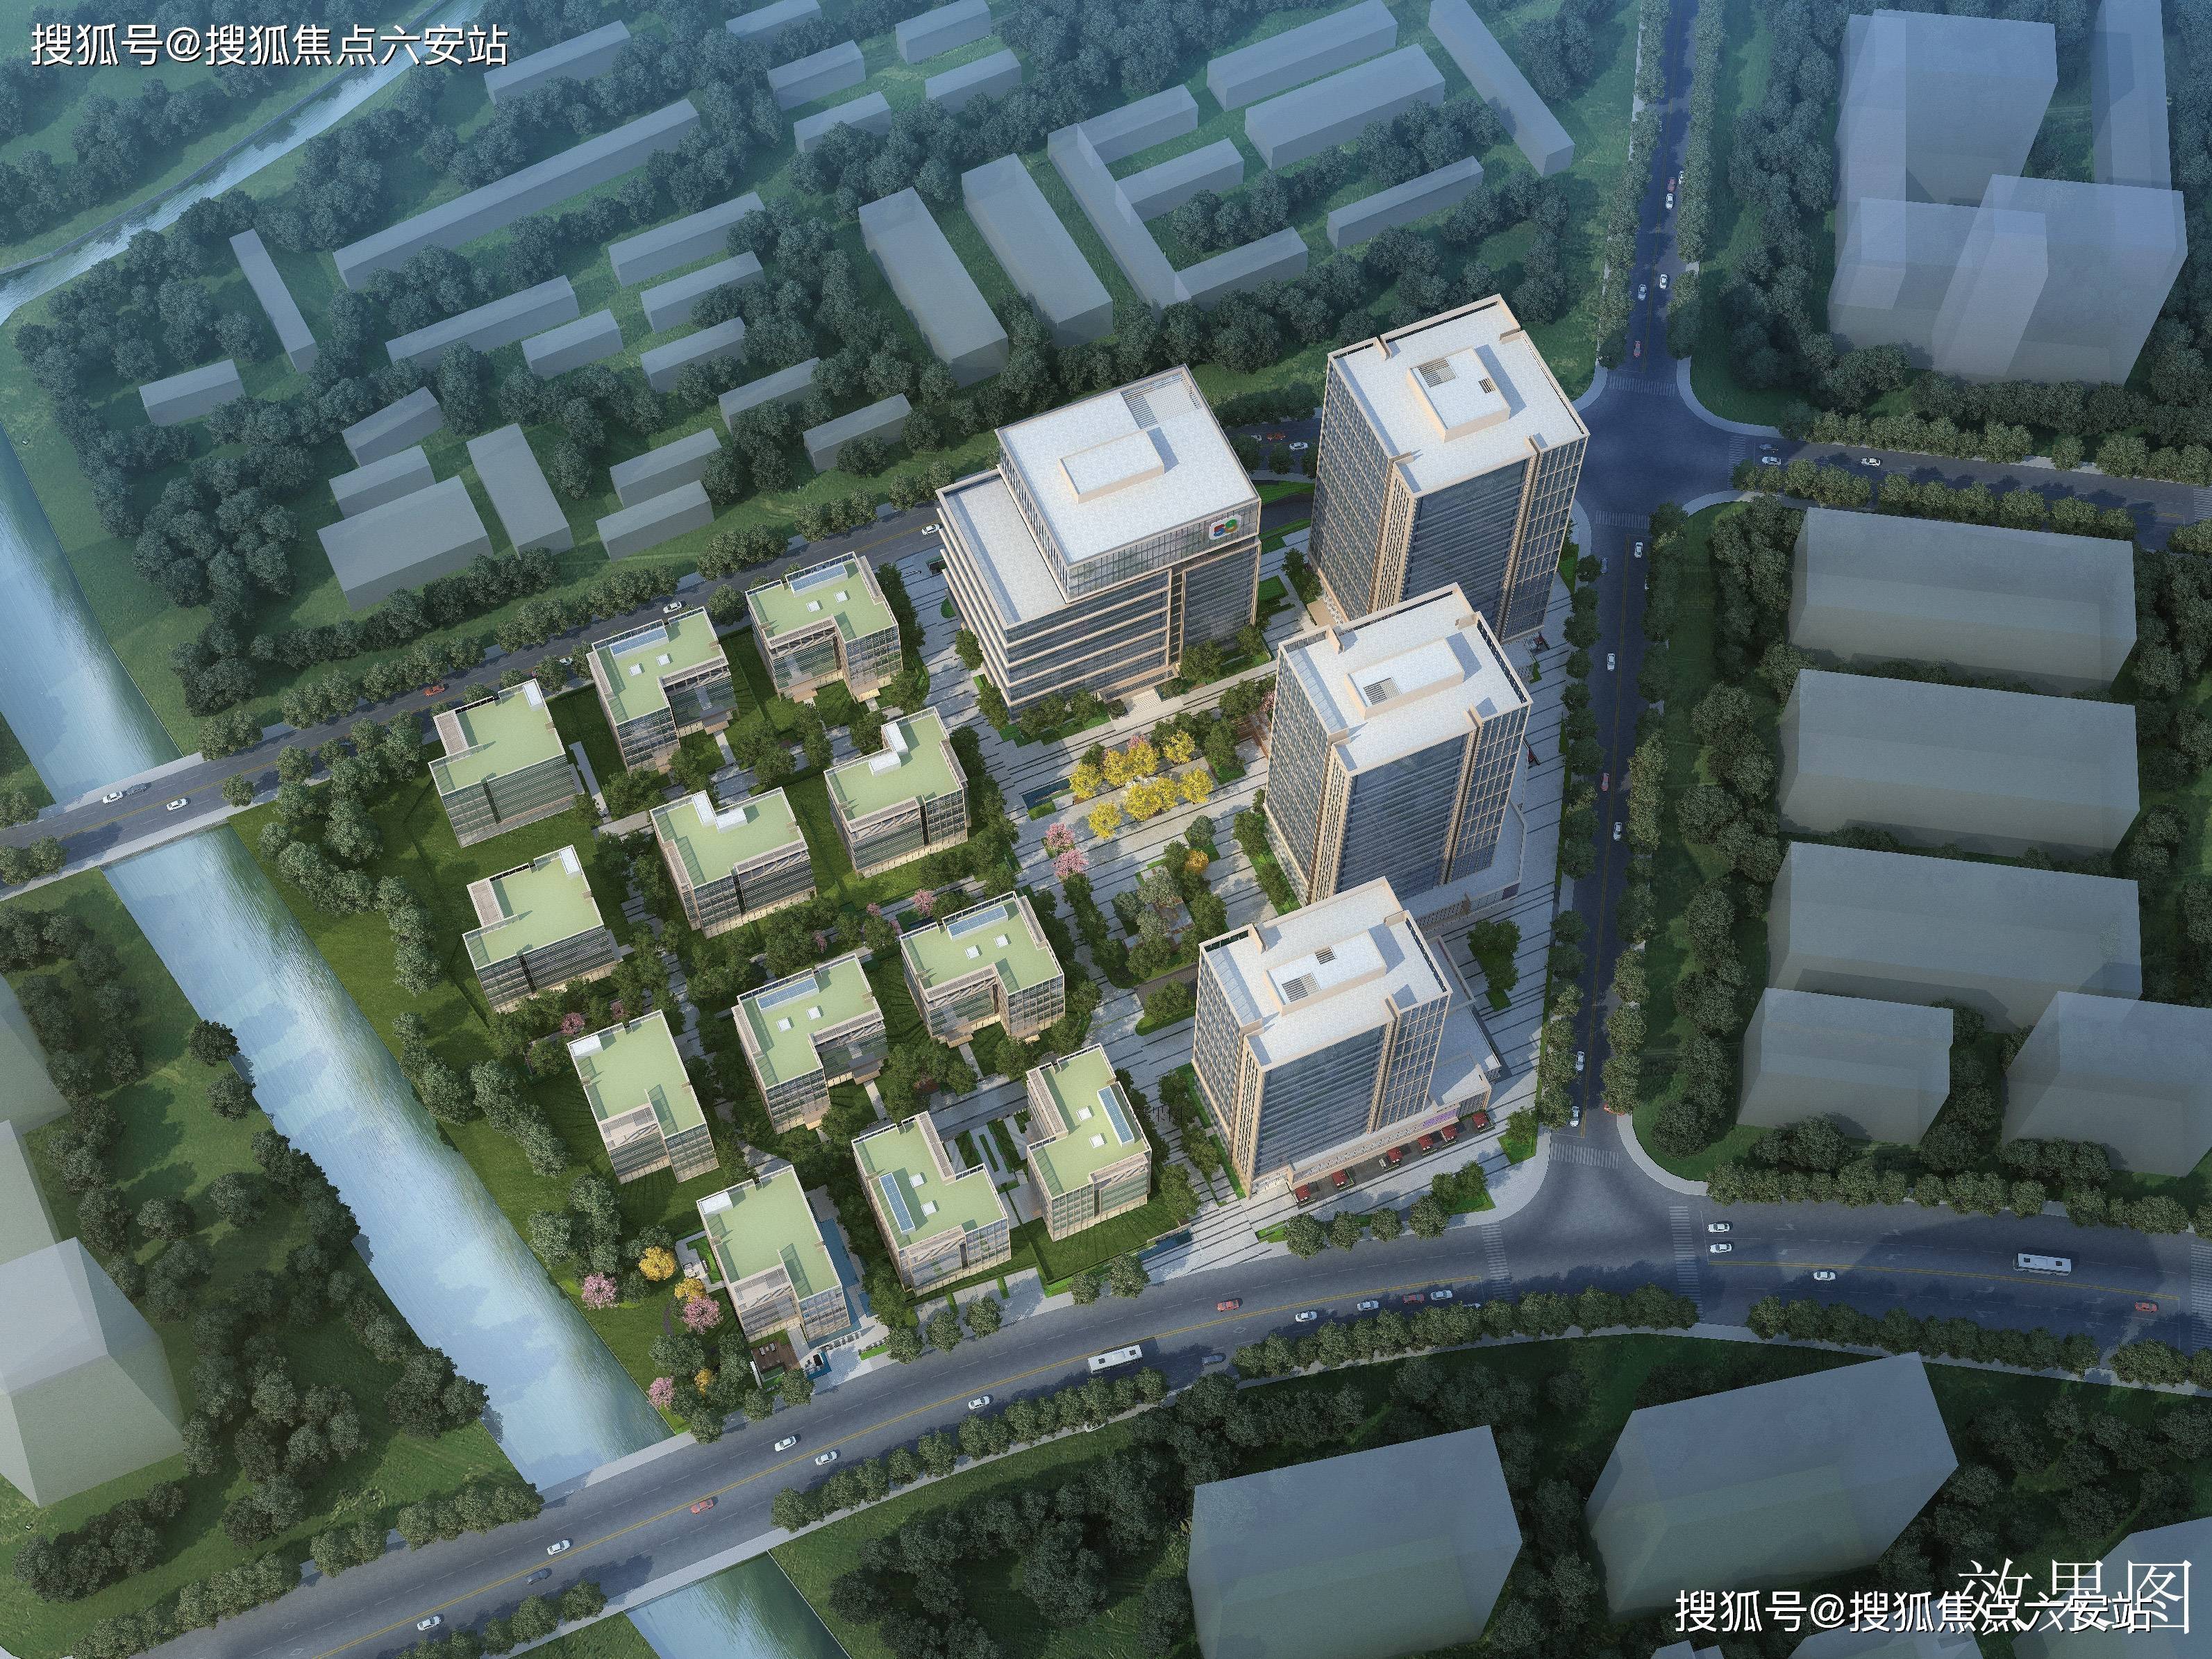 金地威新科技园,位于杭州大运河新城核心,拱墅智慧网谷内,由4栋品质